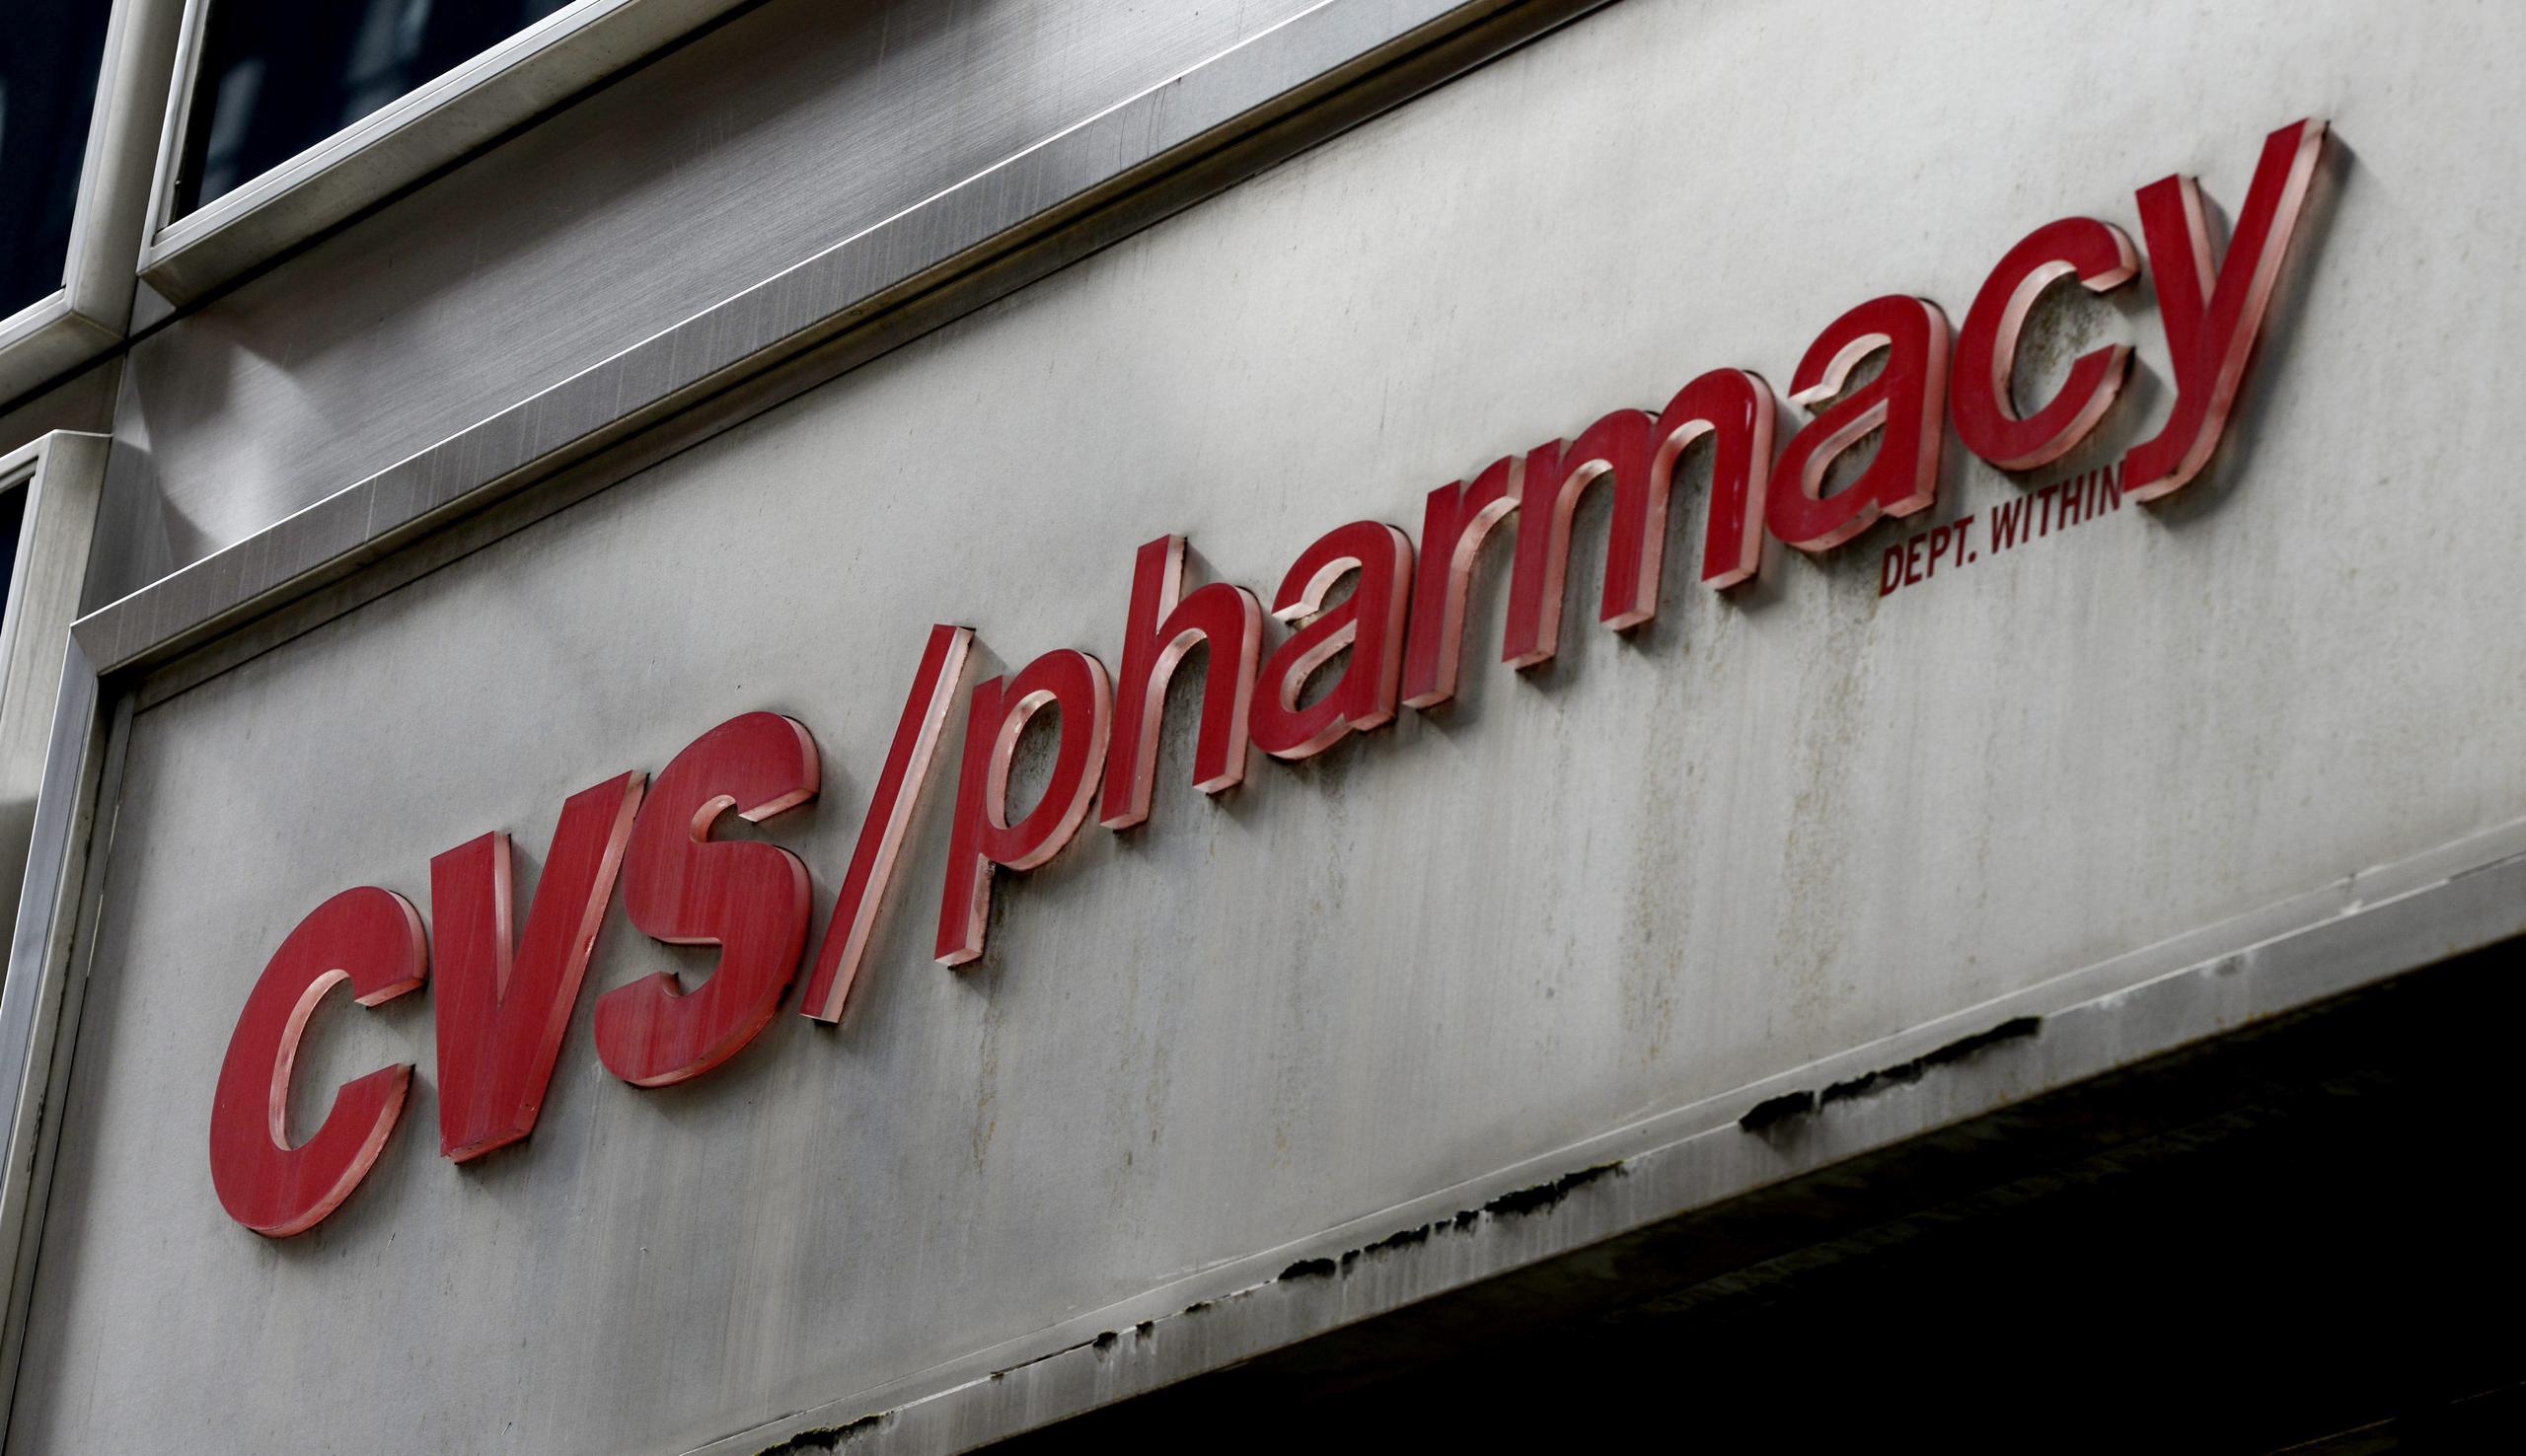 El acuerdo incluye la venta de más de 1,660 farmacias en tiendas Target que llevarán el nombre CVS/pharmacy.